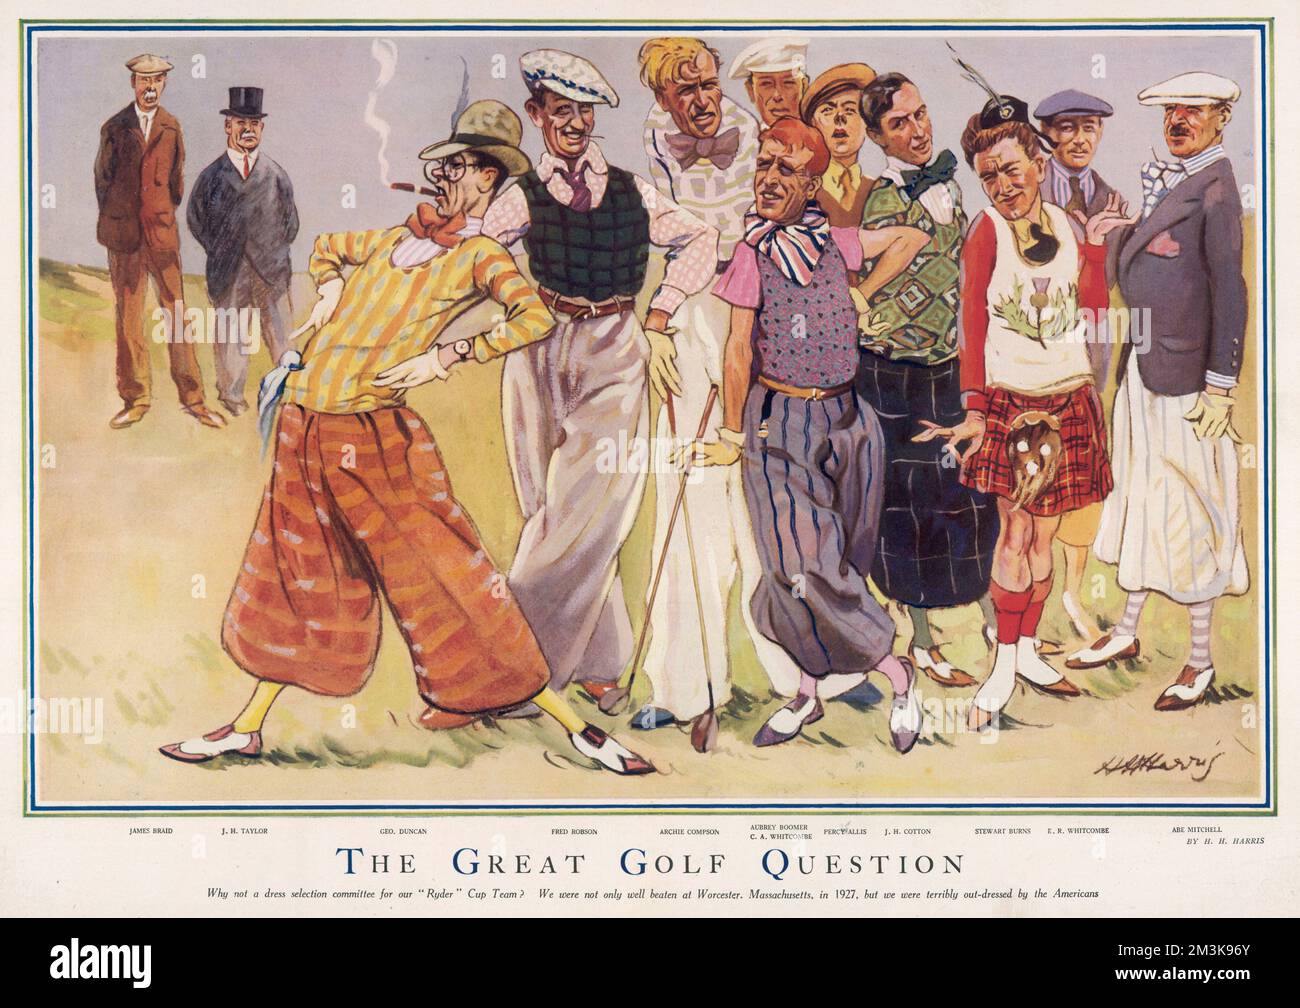 Cartoon-Lamming die extravagante und extravagante Golfmode des Tages. Zu den Golfspielern zählen James Braid, J.H. Taylor, George Duncan, Fred Robson, Archie Datum: 24. April 1929 Stockfoto